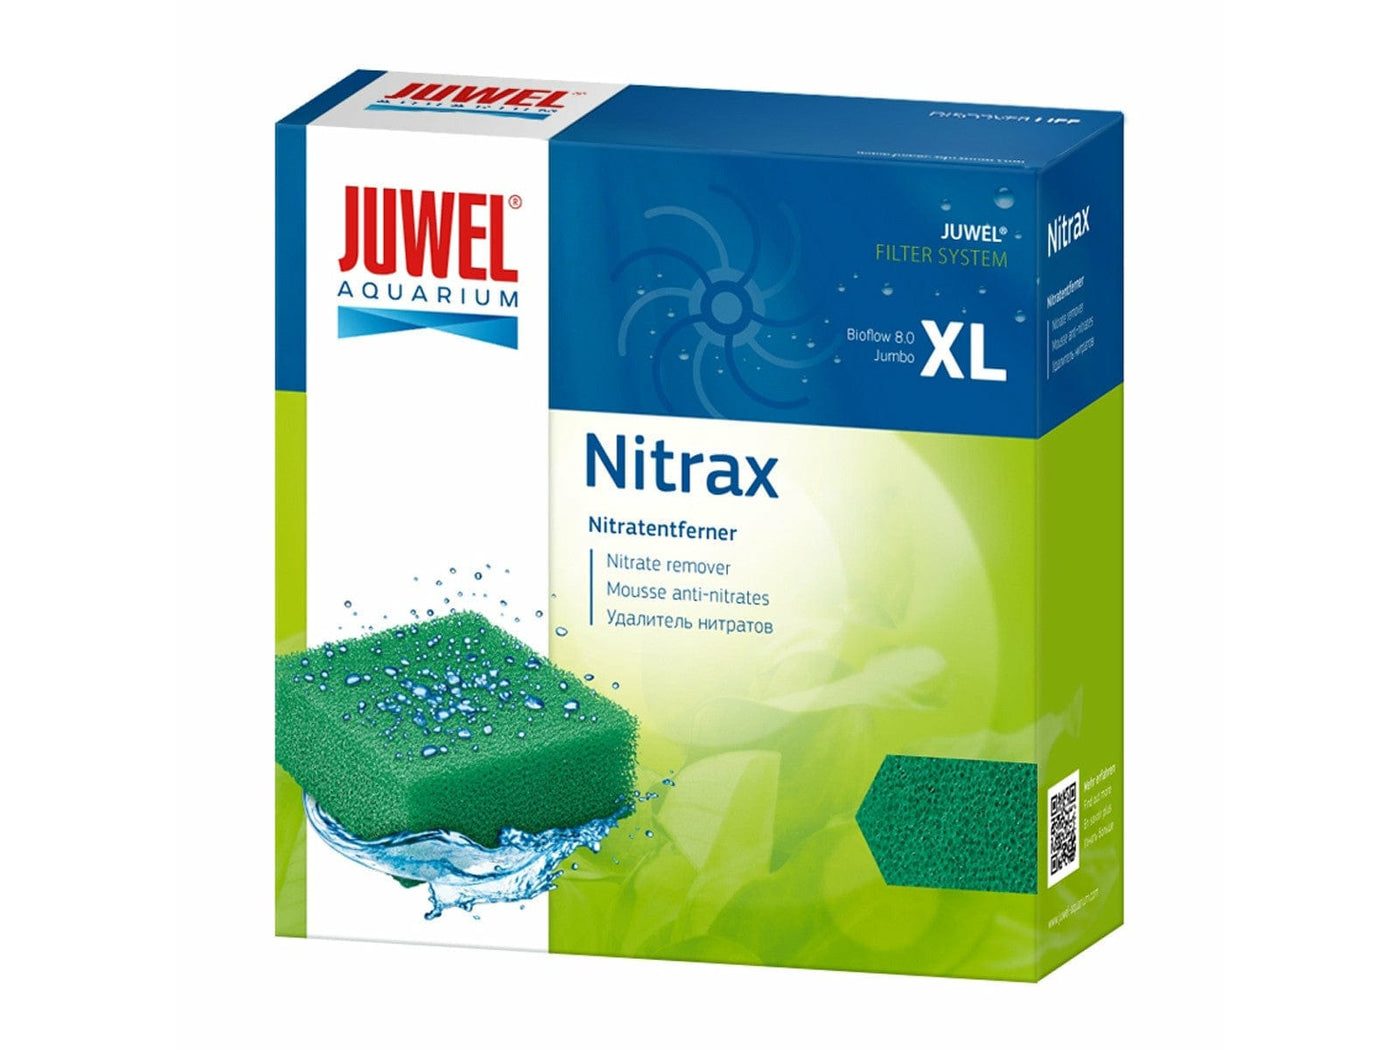 Nitrax - XL